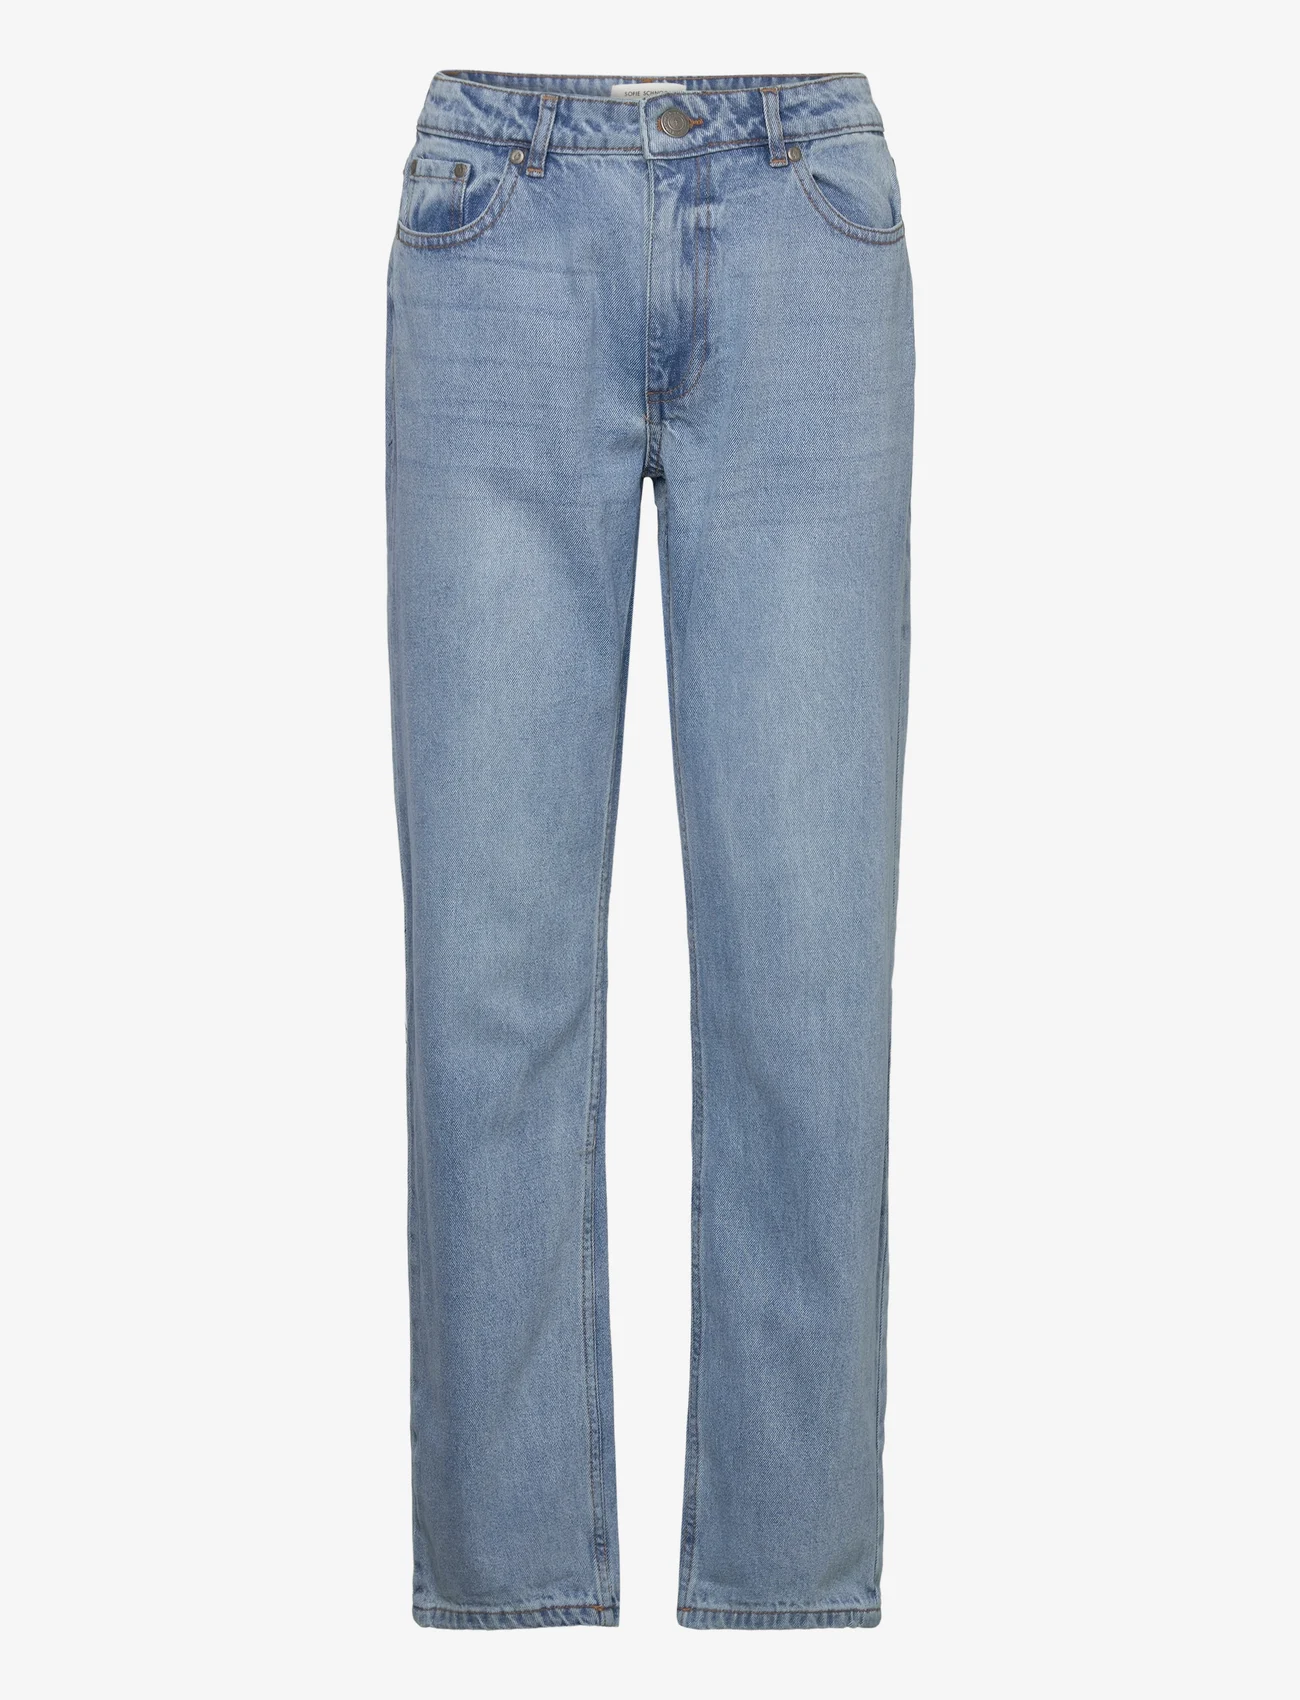 Sofie Schnoor - Jeans - straight jeans - denim blue - 0